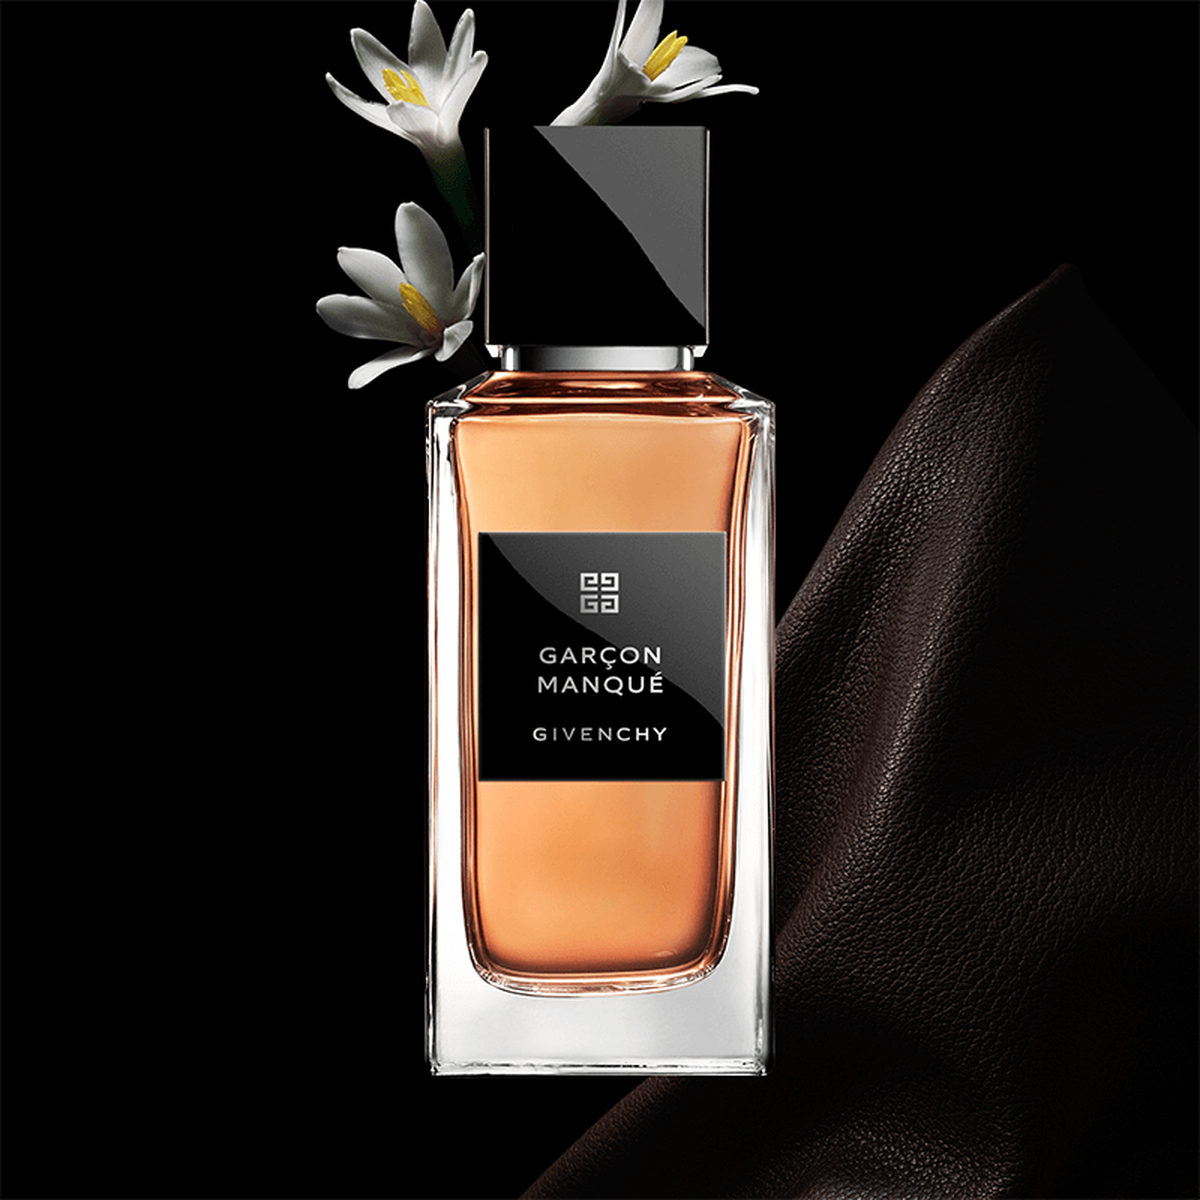 Garçon Manqué Perfume La Collection Particulière | Givenchy Beauty